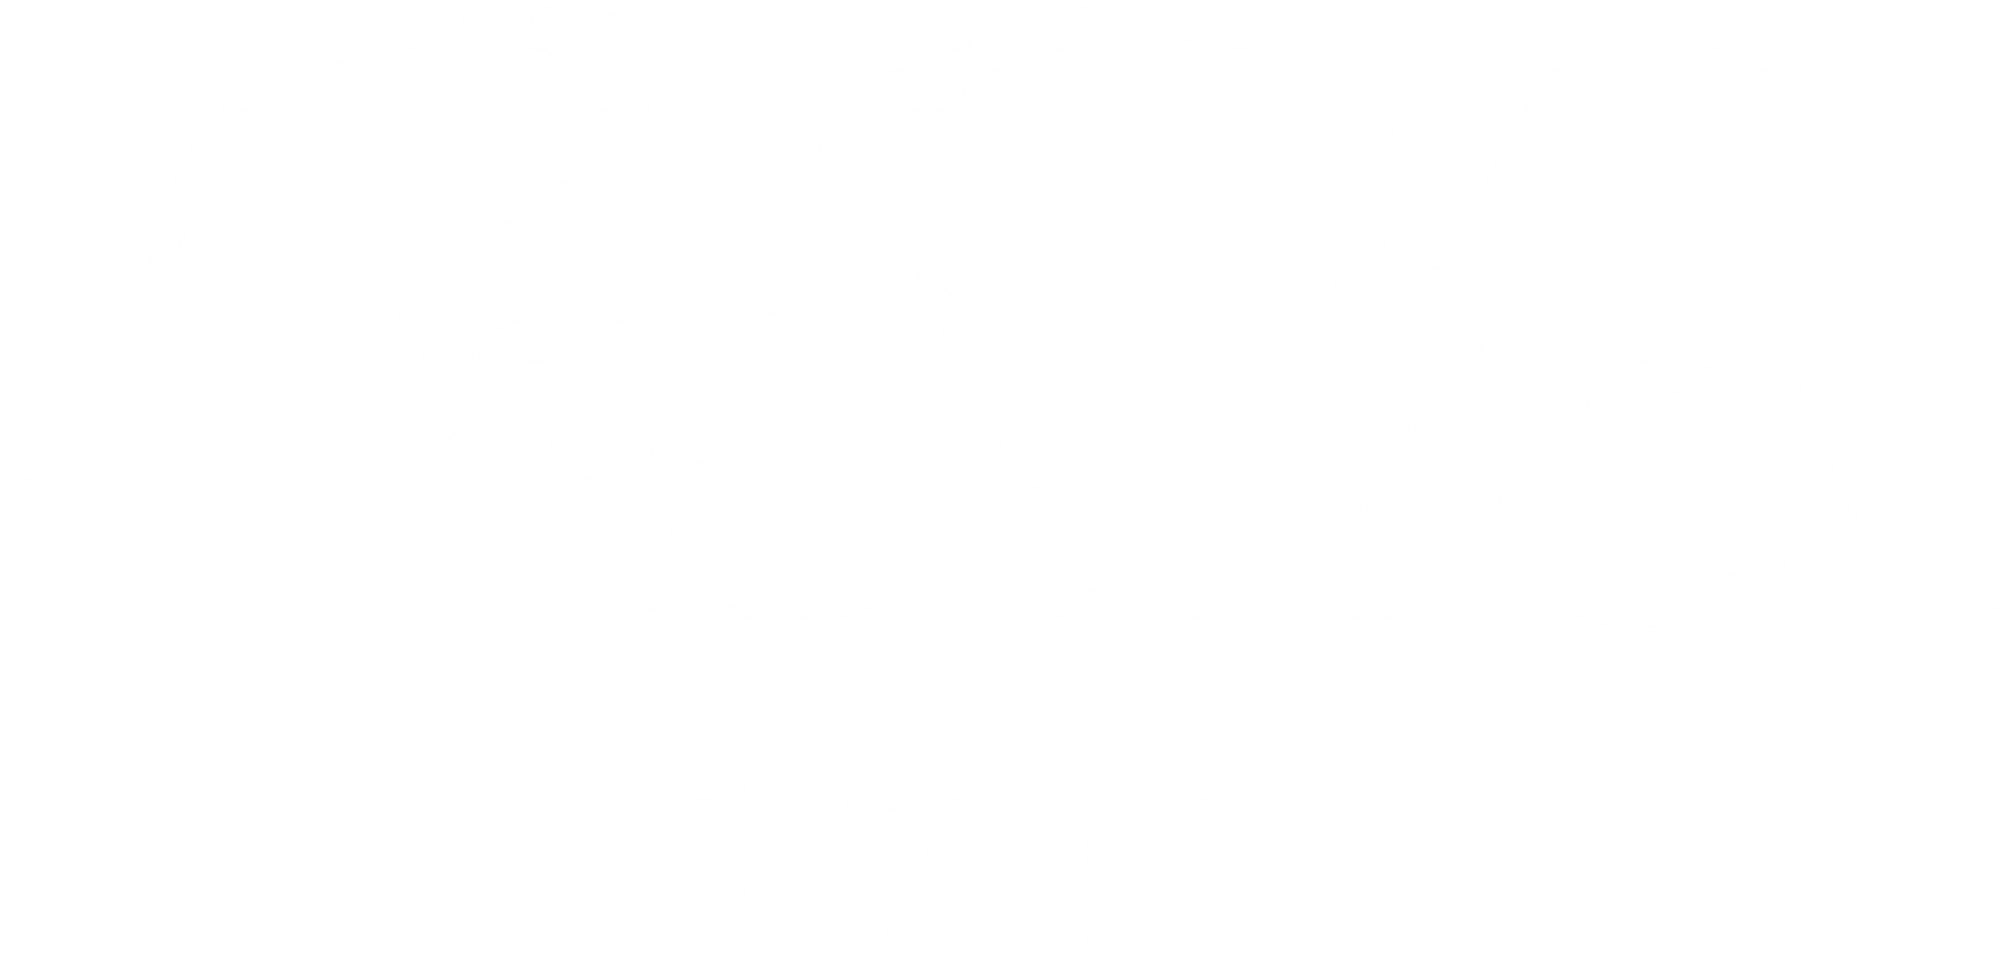 Kosta white logo